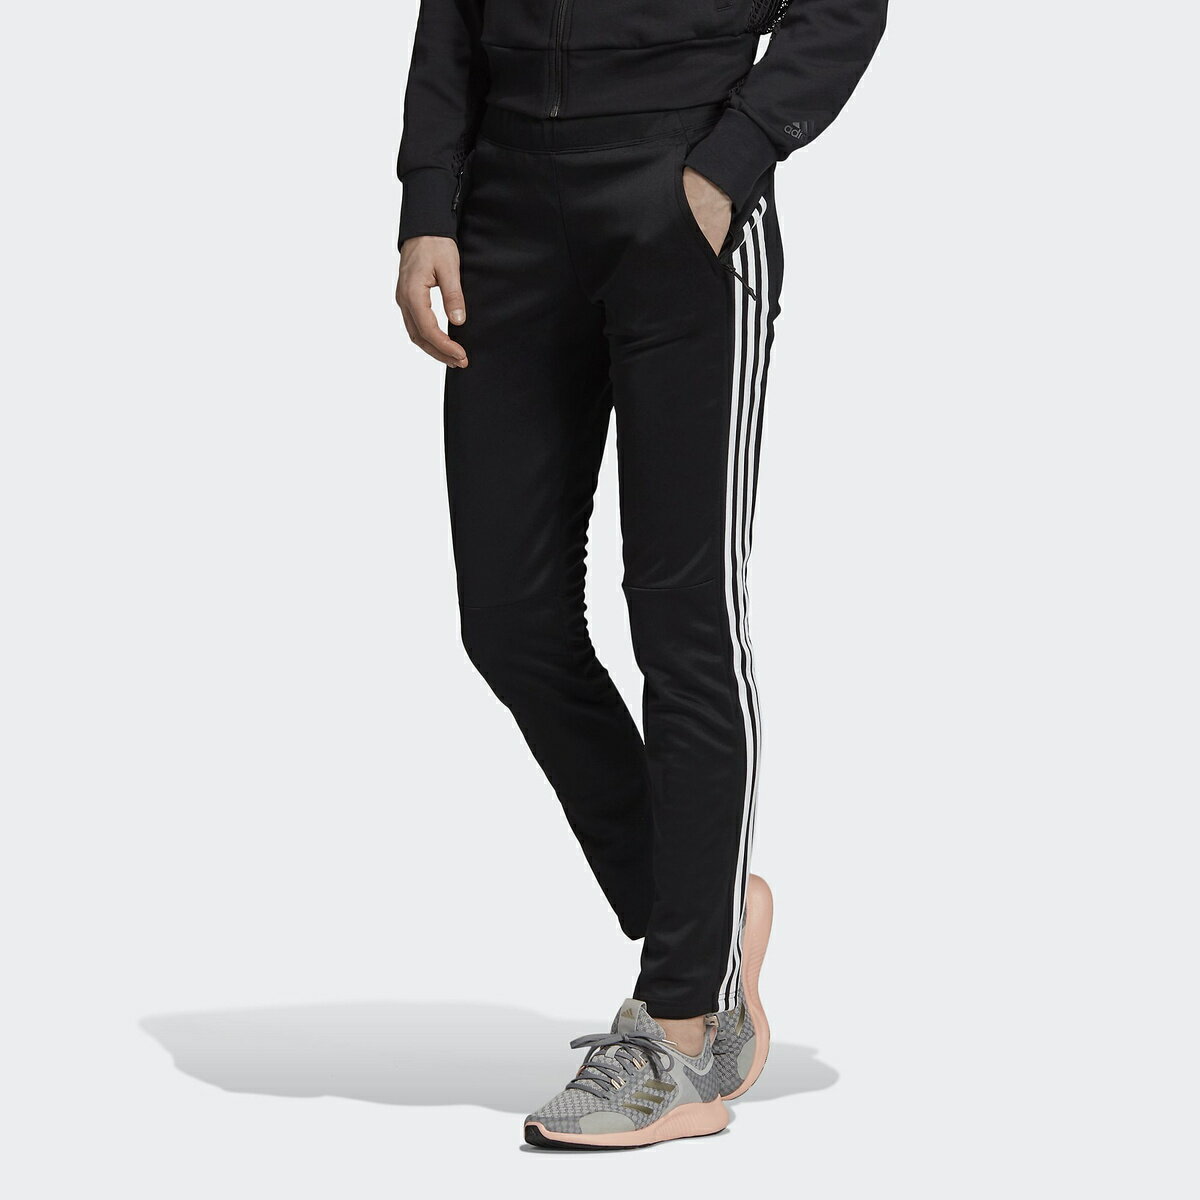 adidas アディダス ID スリーストライプス スキニー パンツ (ID 3-Stripes Skinny Pants) EI6182 S